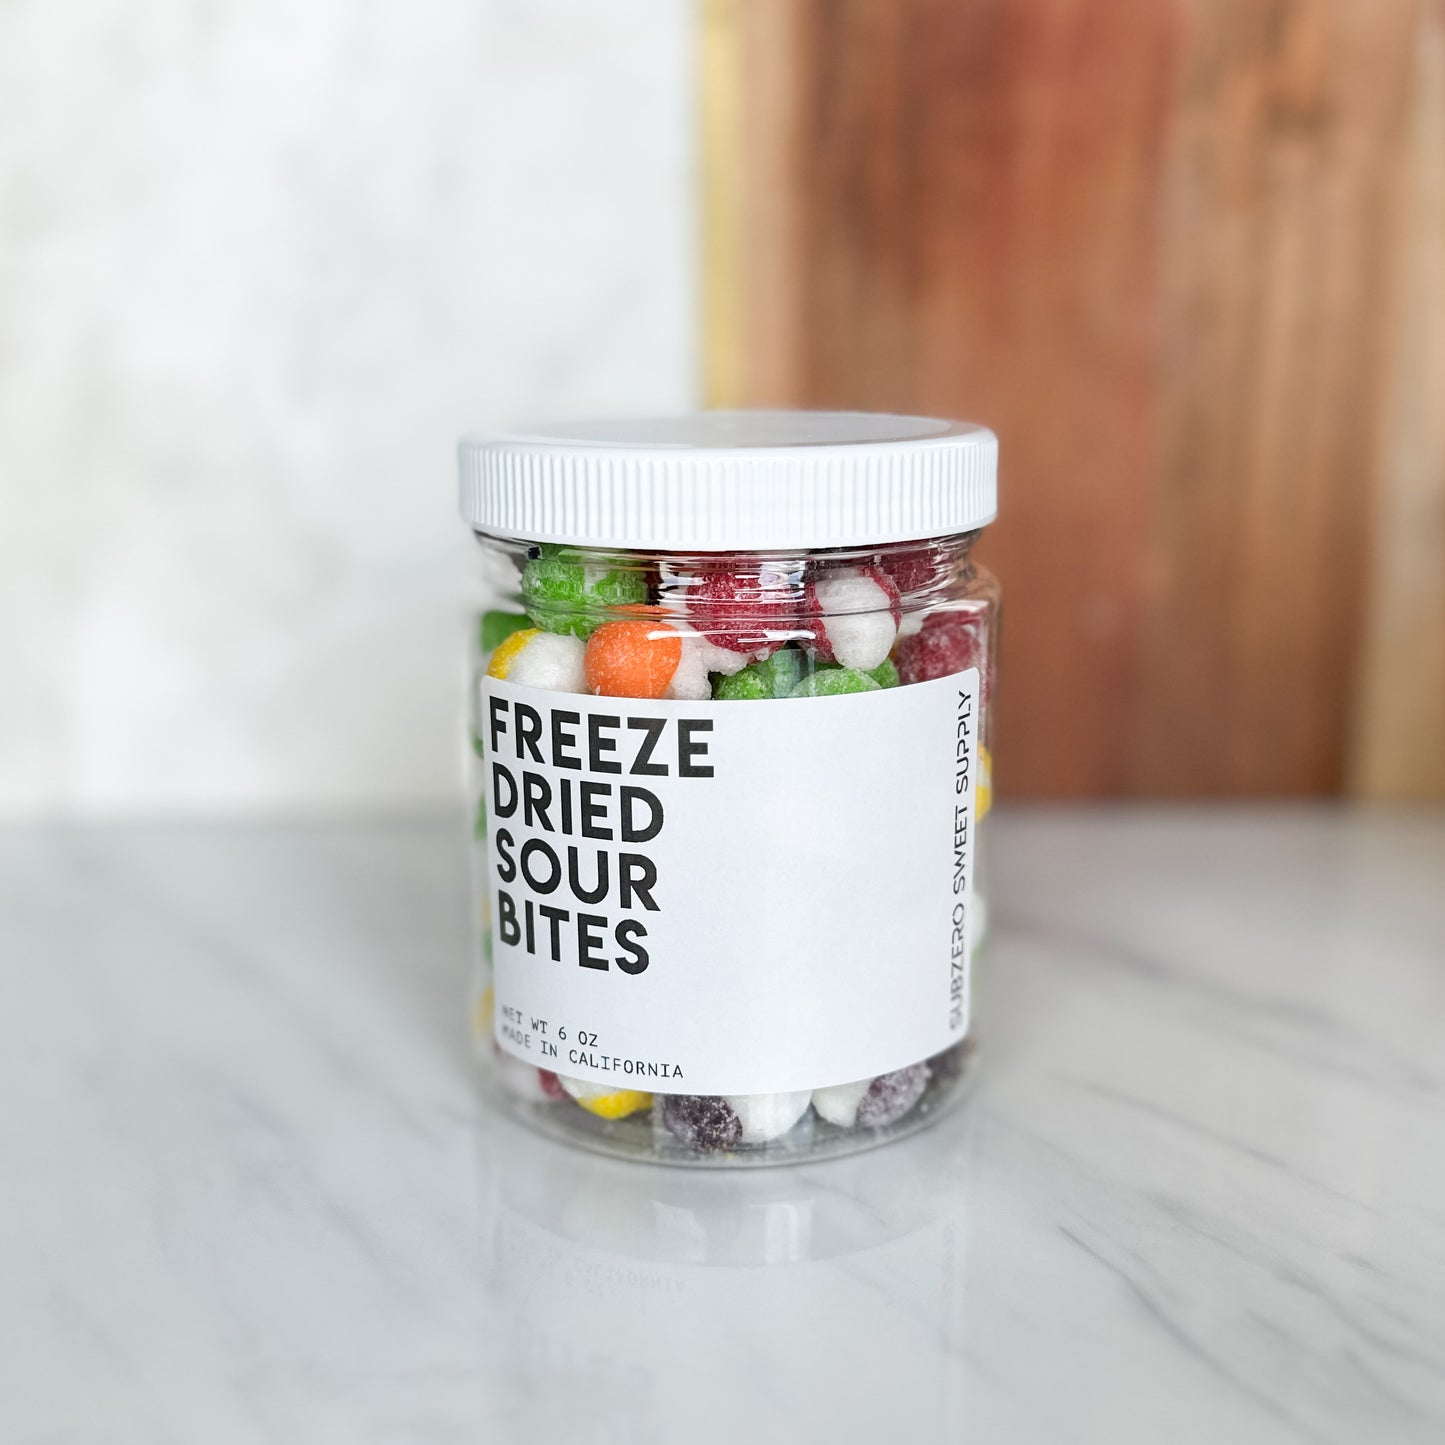 Freeze Dried Sour Rainbow Bites